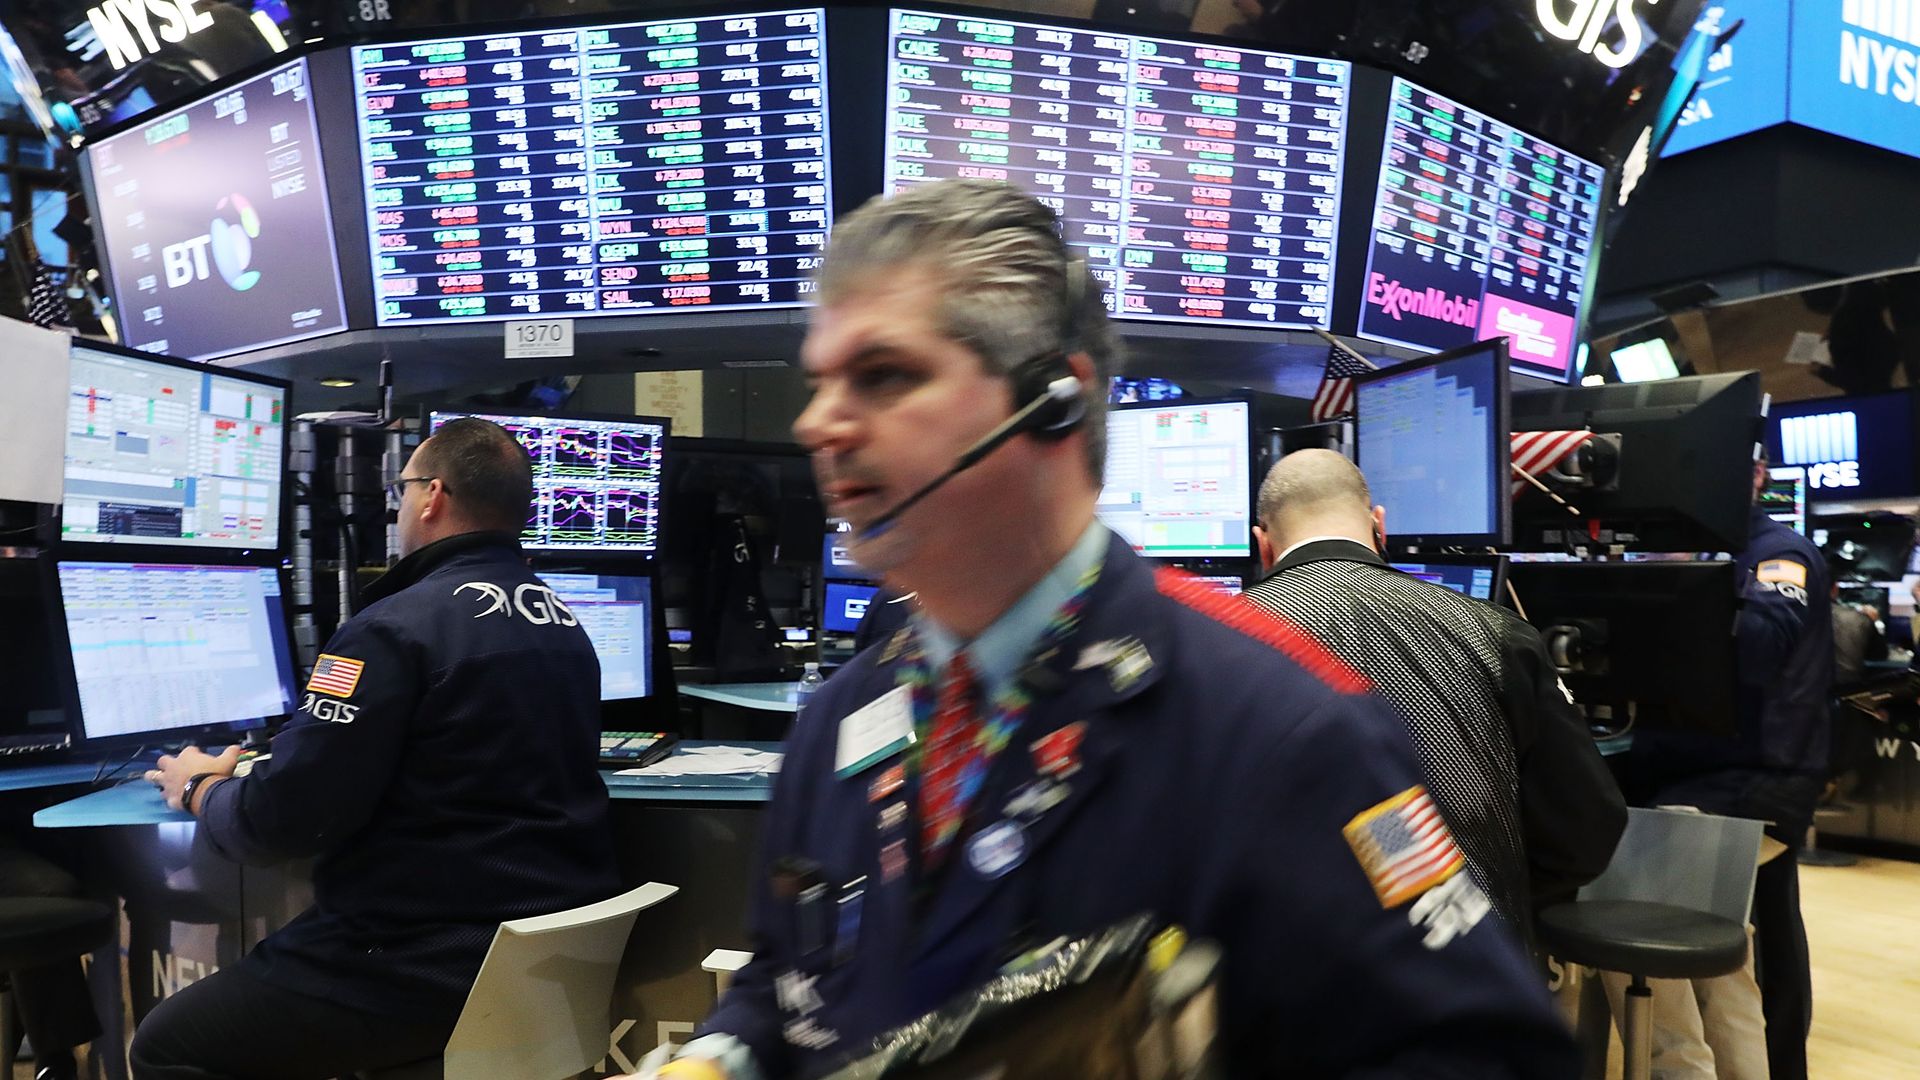 Brokers run around on the Wall Street stock exchange floor